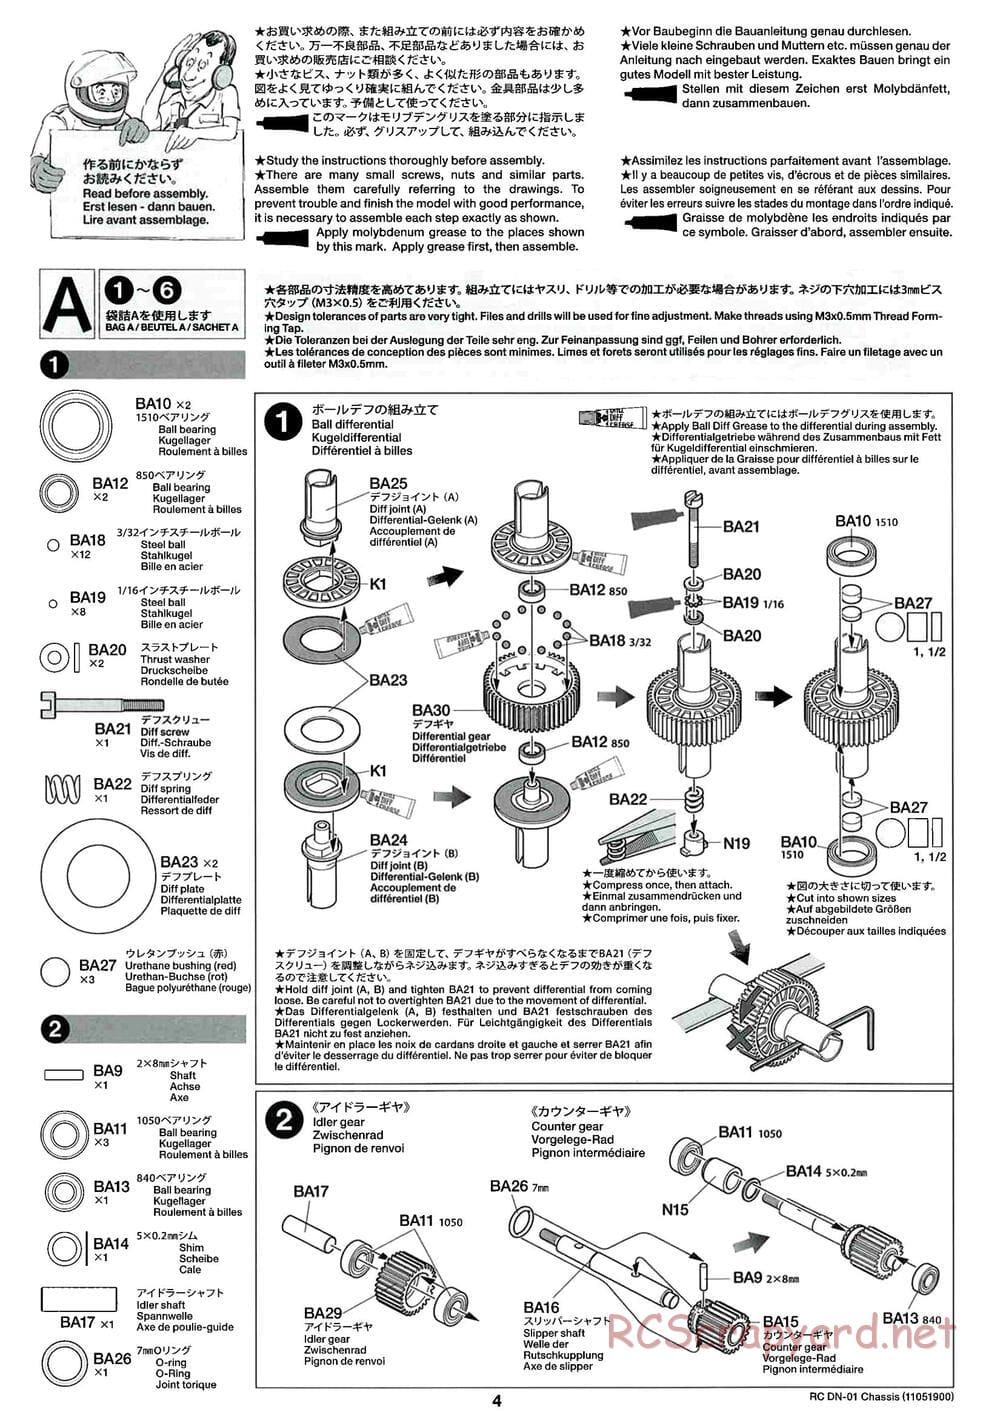 Tamiya - DN-01 Chassis - Manual - Page 4